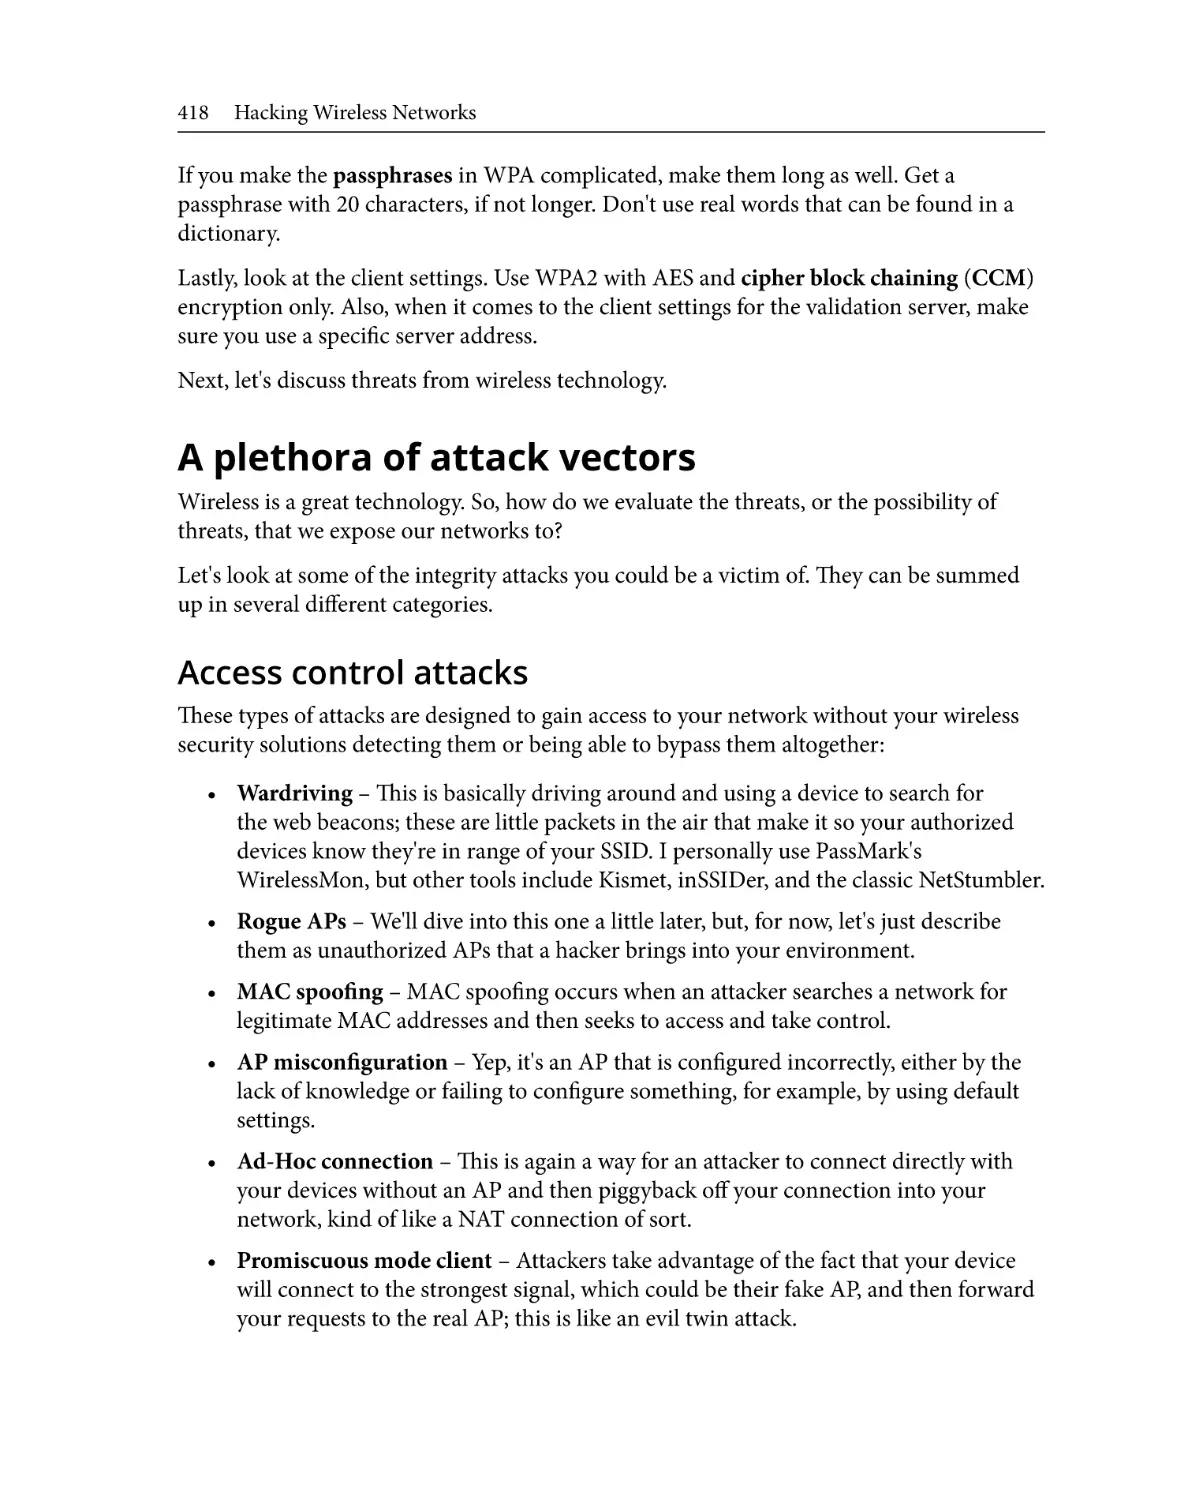 A plethora of attack vectors
Access control attacks